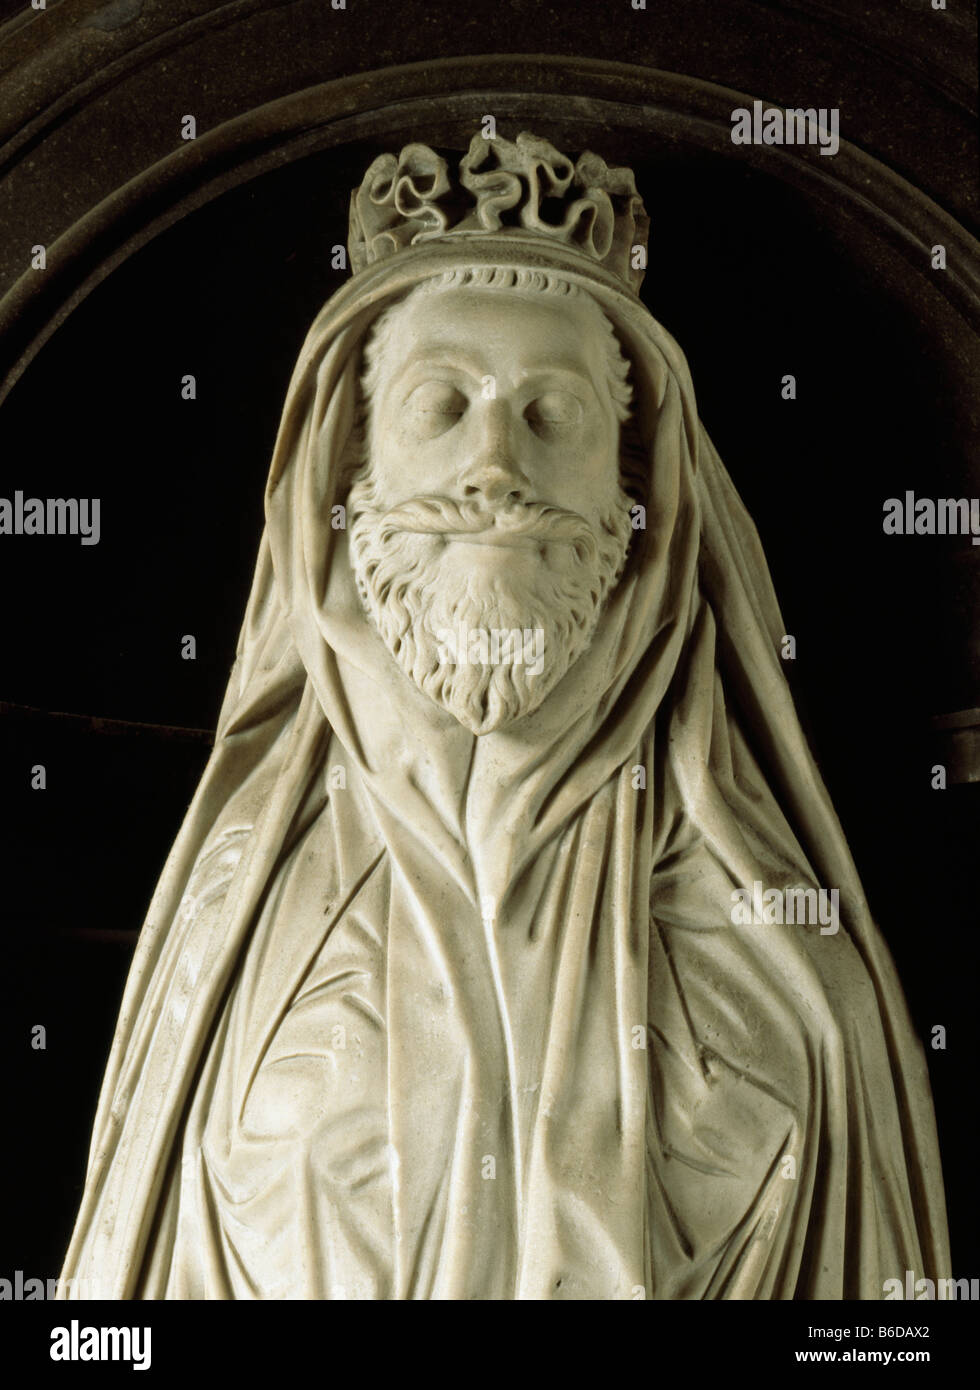 Beerdigung-Bildnis von John Donne in Saint-Paul Kathedrale London. Zeigt, dass sein Leichentuch, auf eine Begräbnis-Urne Donne umhüllt. Stockfoto